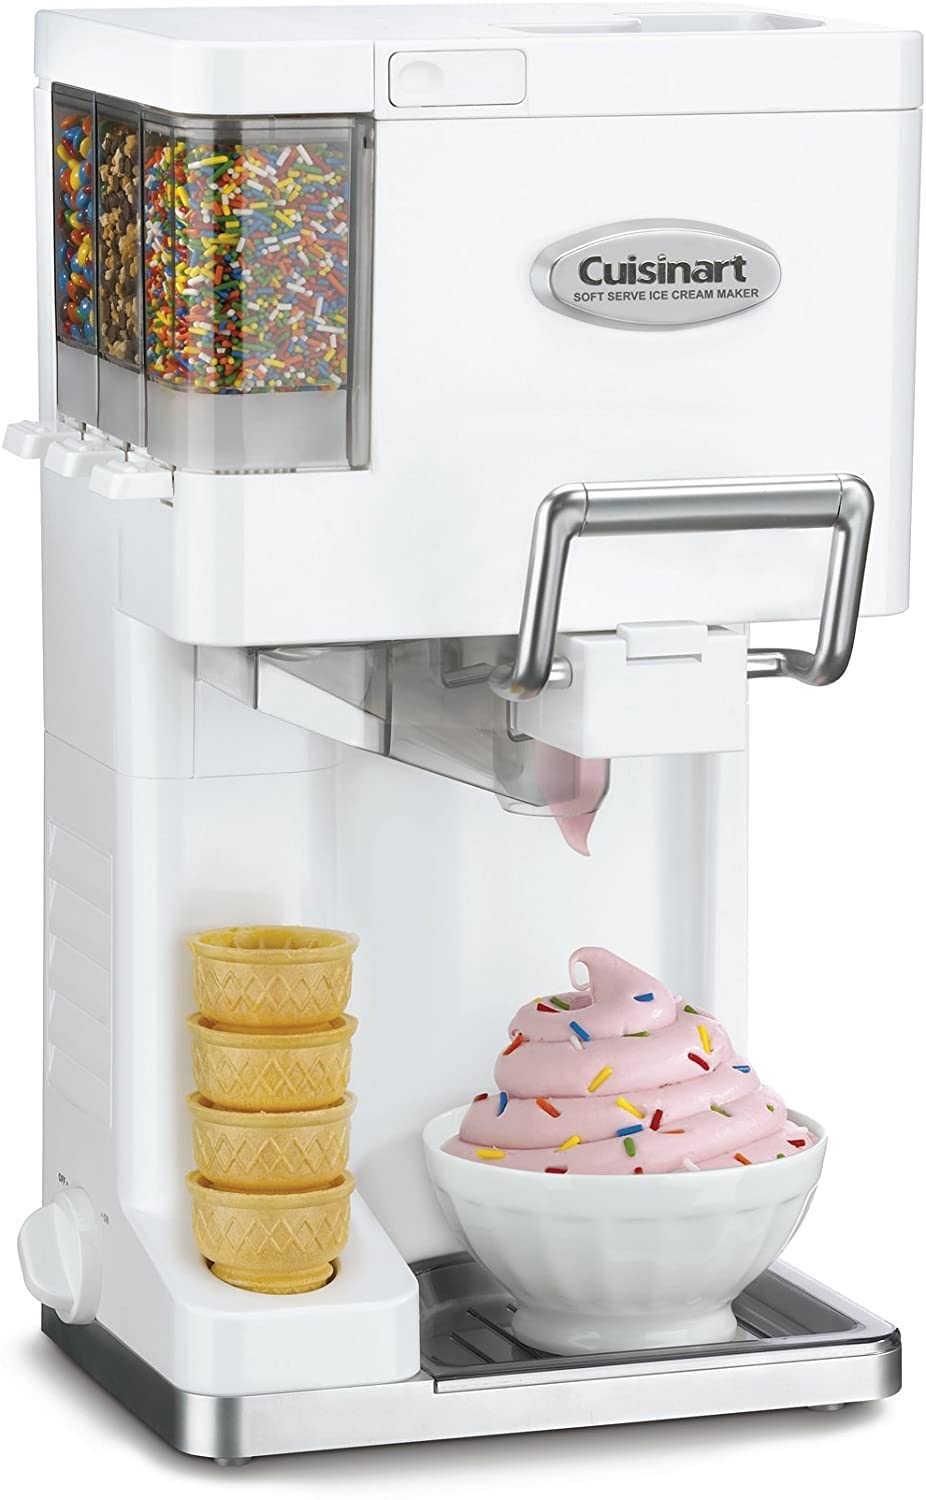 Cuisinart ICE-45 Máquina para hacer helados Mix It In Soft Serve de 1-1/2 cuartos